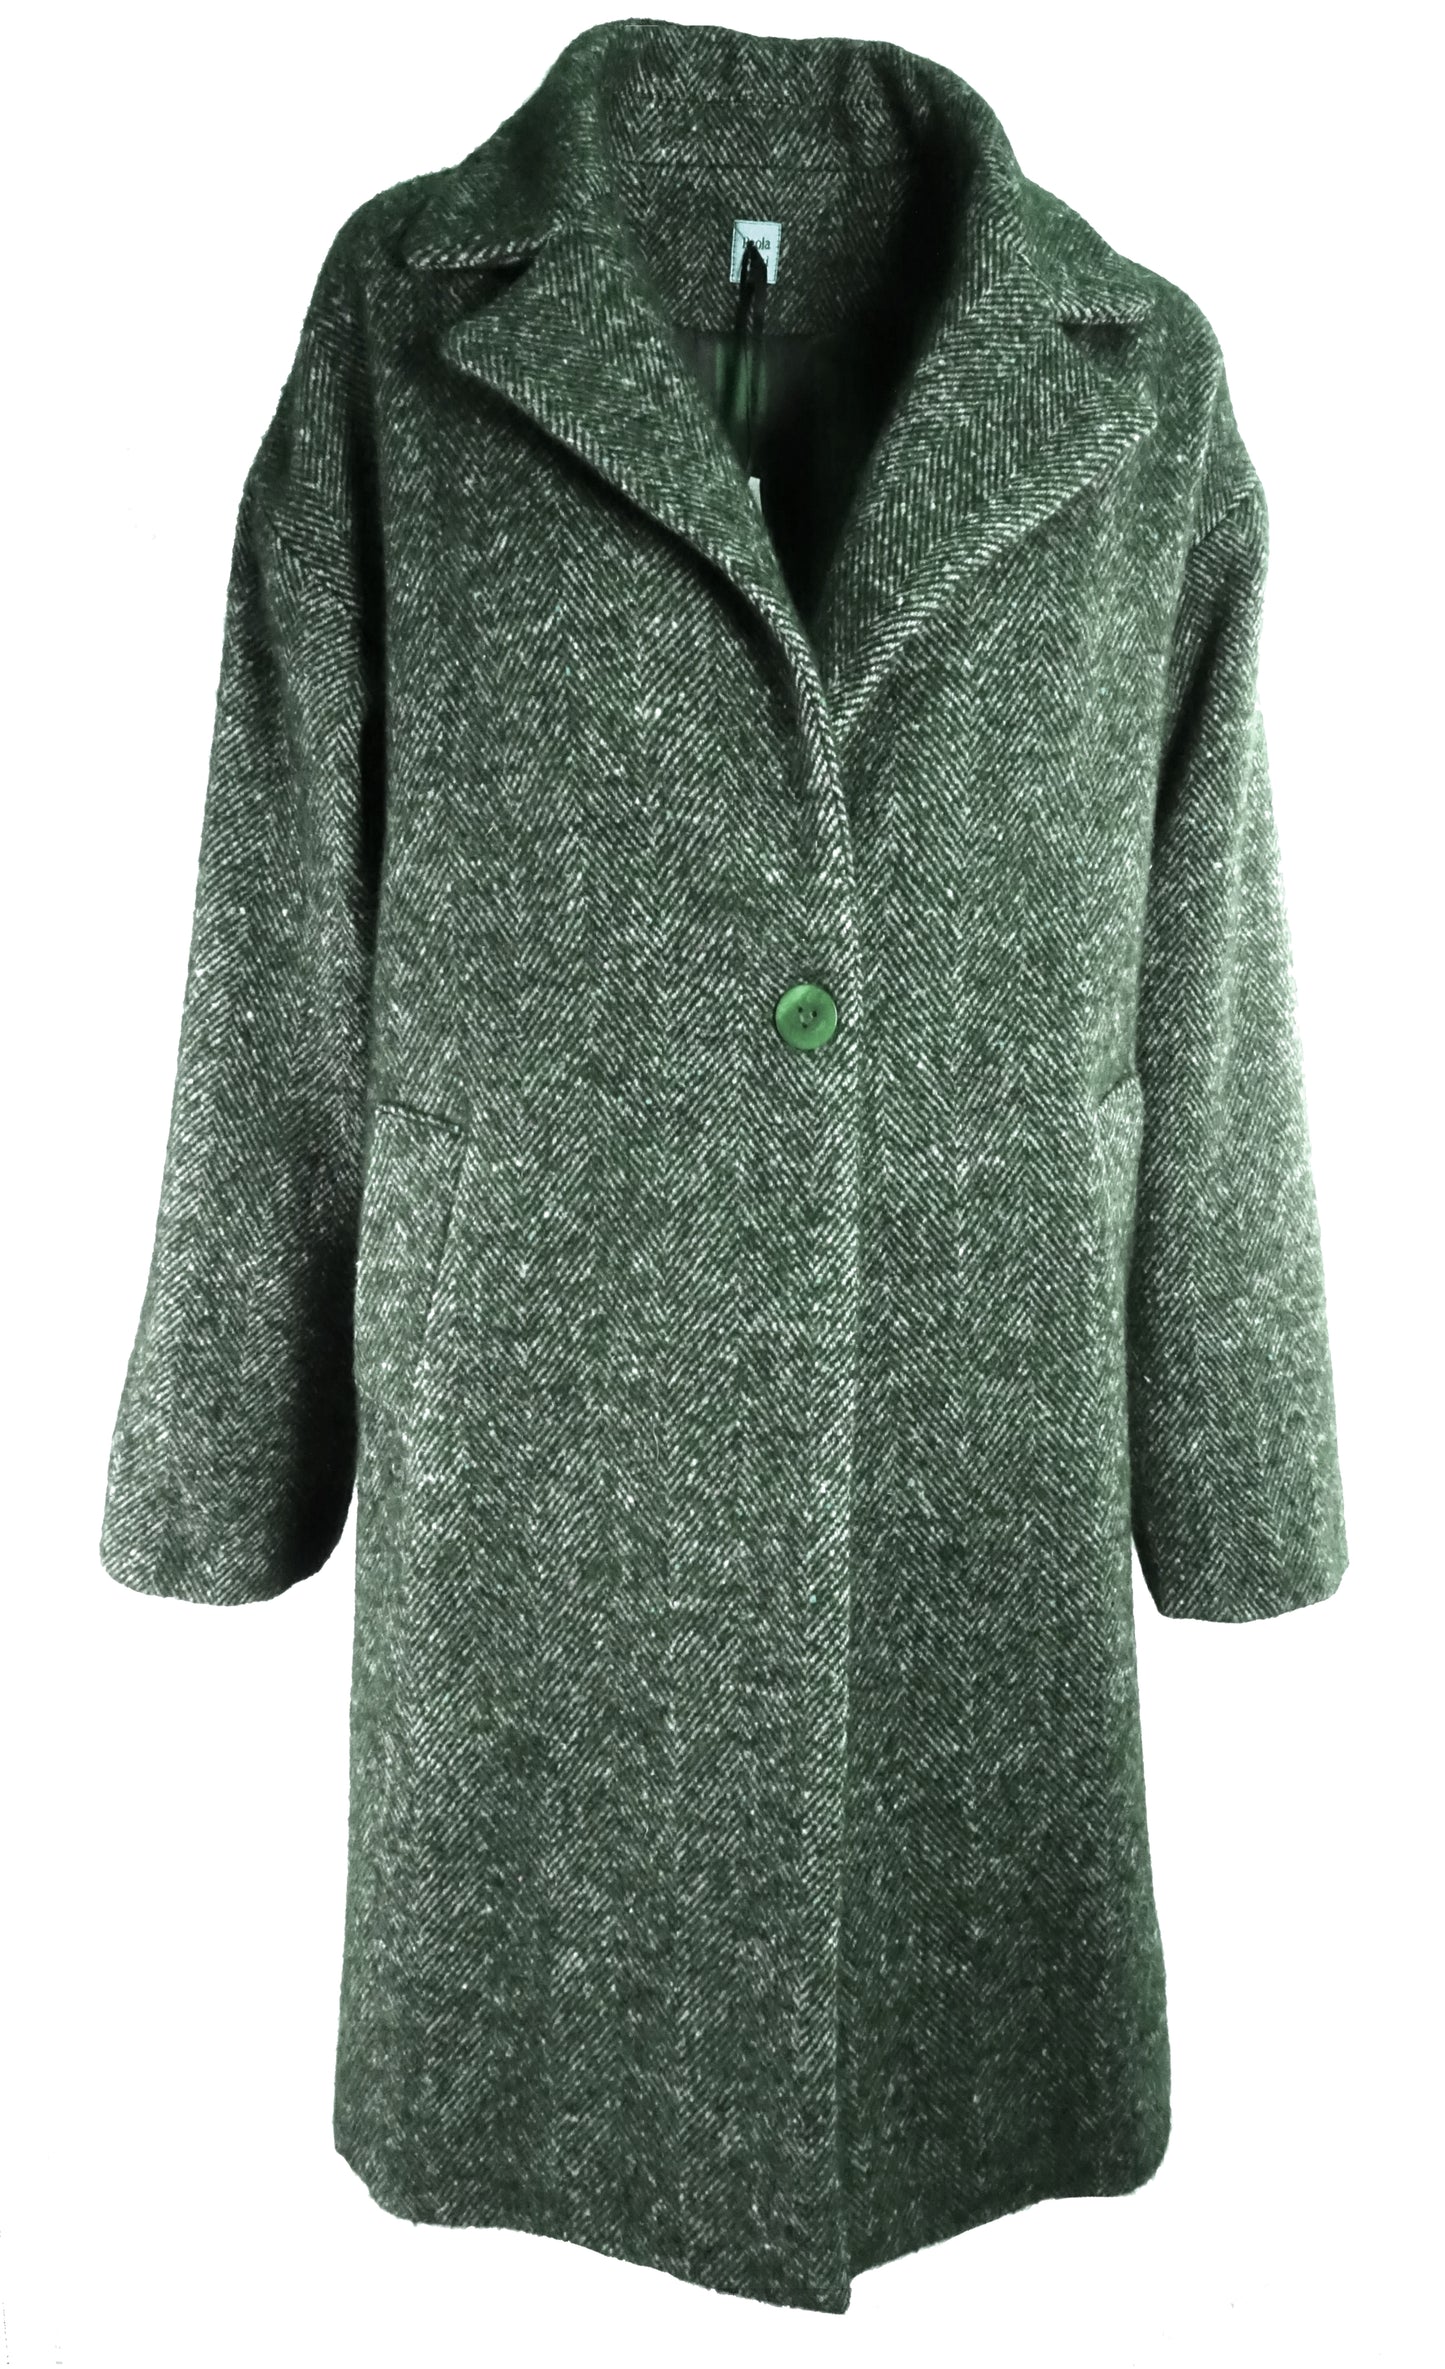 Nicole new coat in green herringbone wool